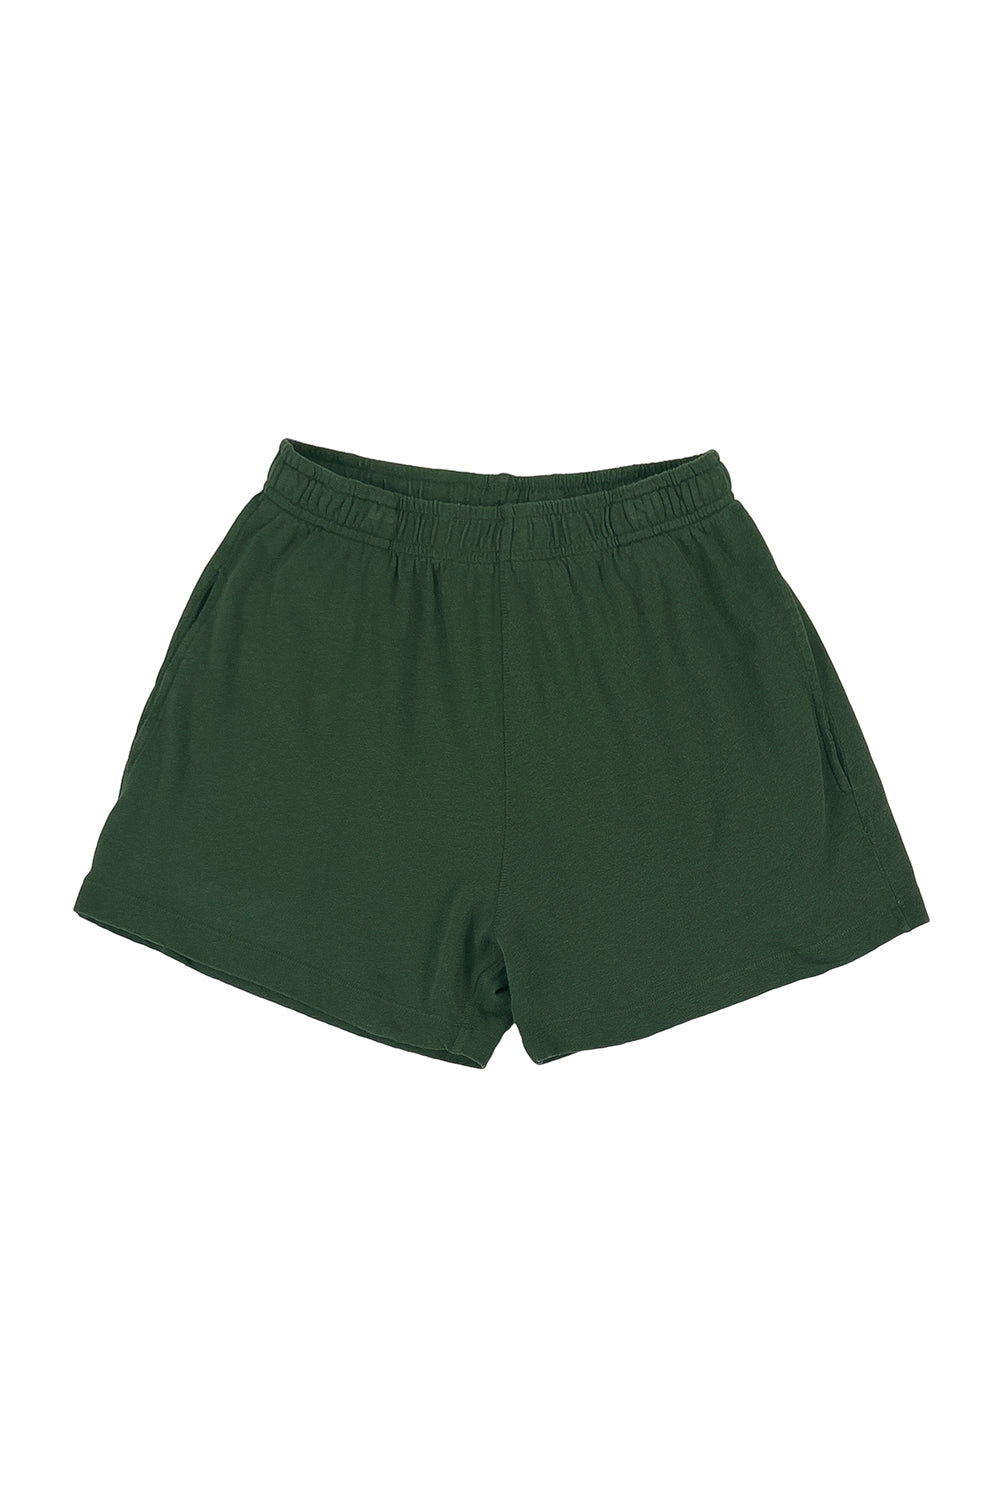 Shorts SUN 68 Kids color Green